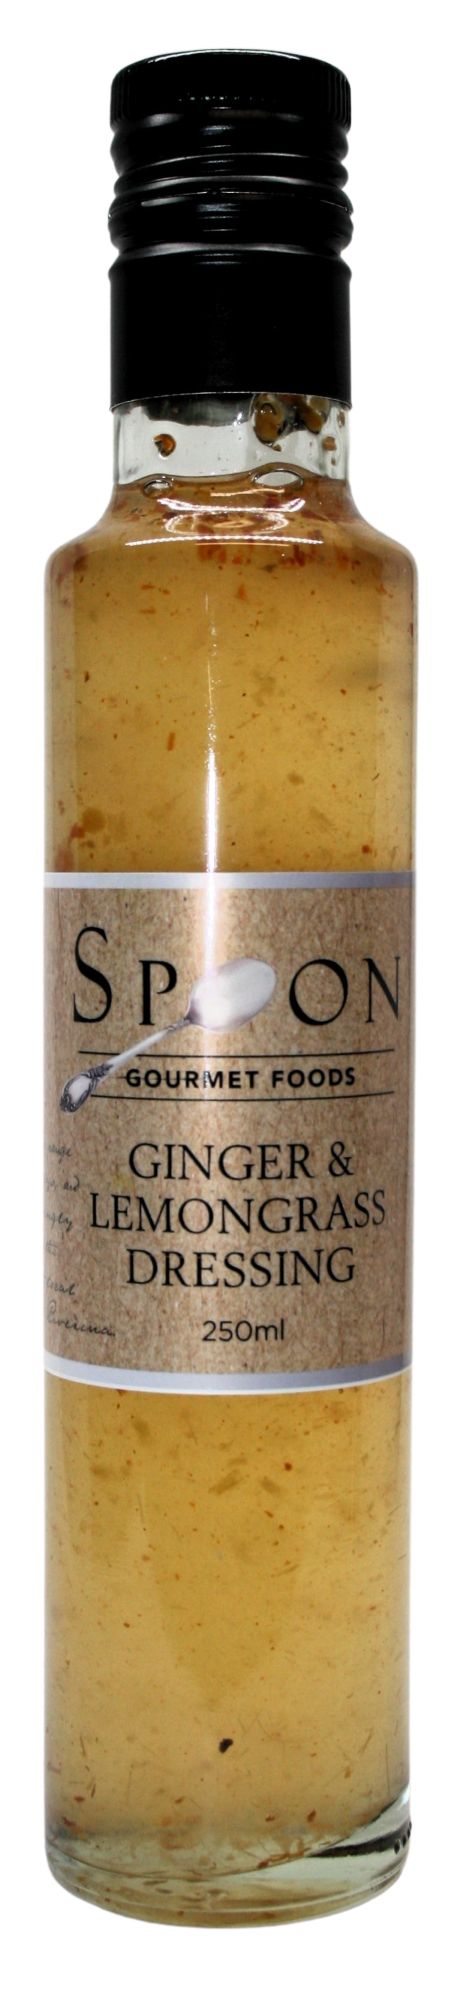 Spoon Ginger & Lemongrass Dressing 250ml